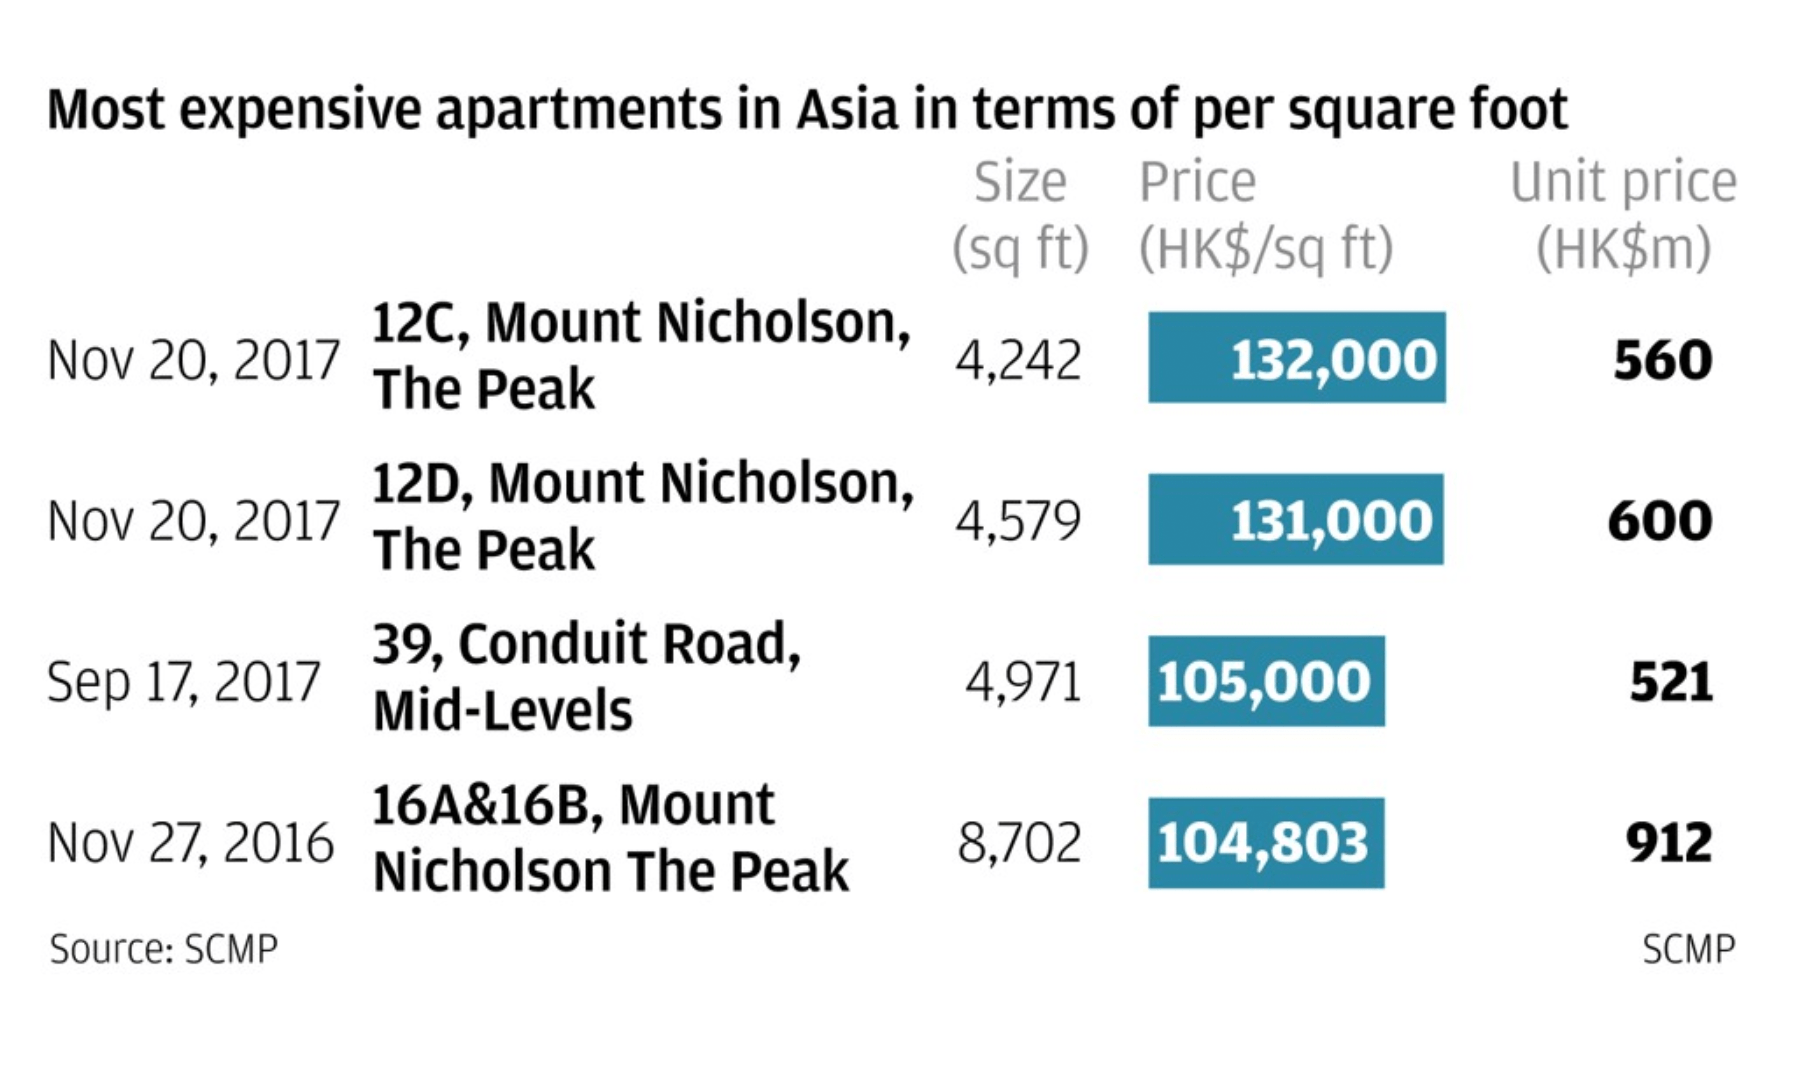 Самые дорогие квартиры в Азии — в Гонконге. Вот такую таблицу с подсчетами опубликовали в South China Morning Post